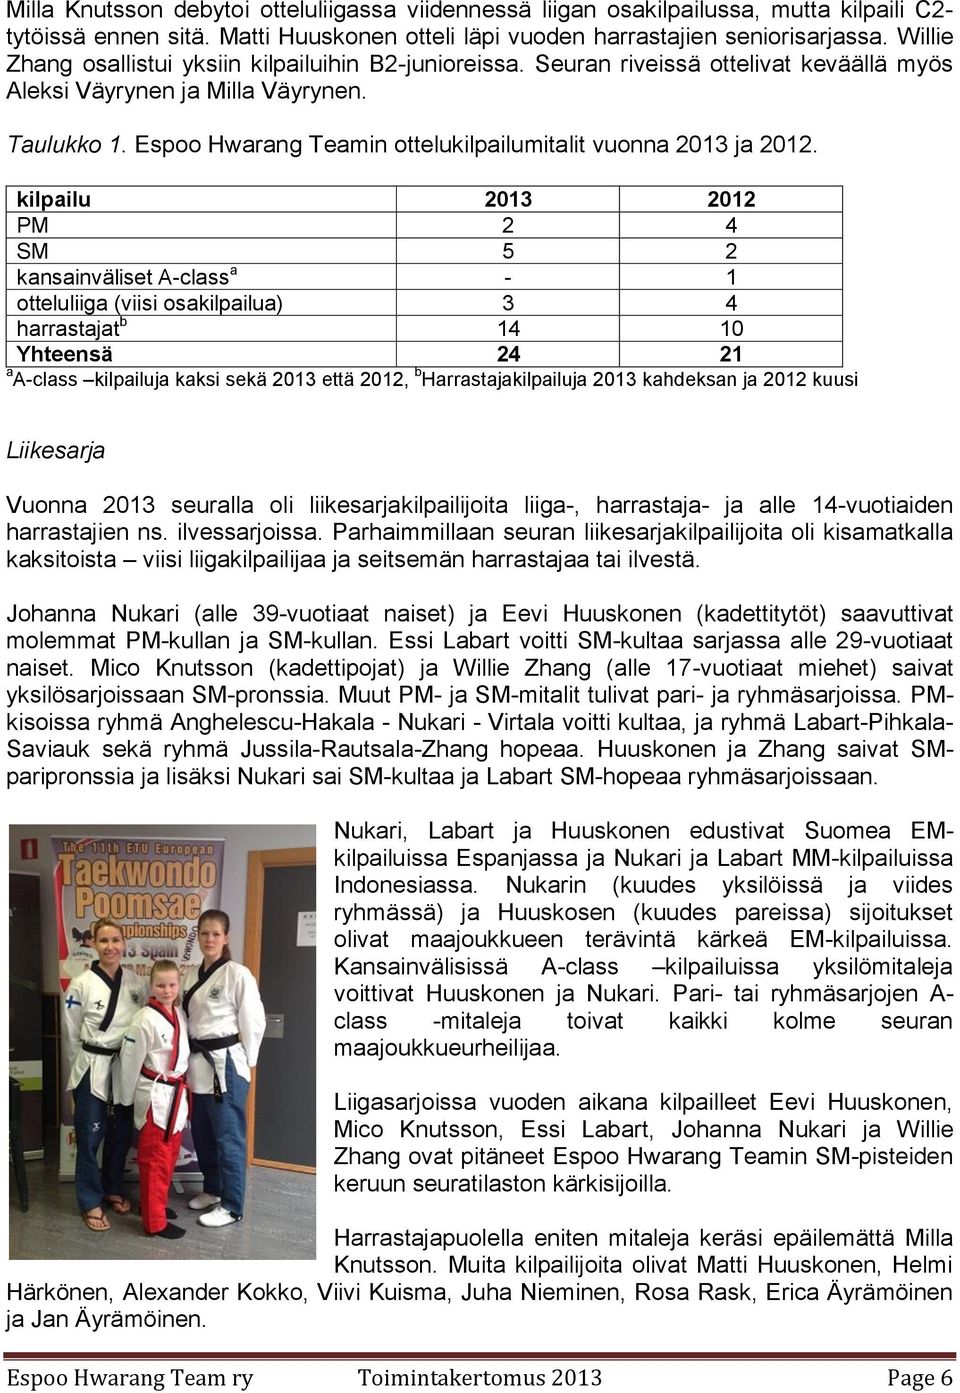 Espoo Hwarang Teamin ottelukilpailumitalit vuonna 2013 ja 2012.